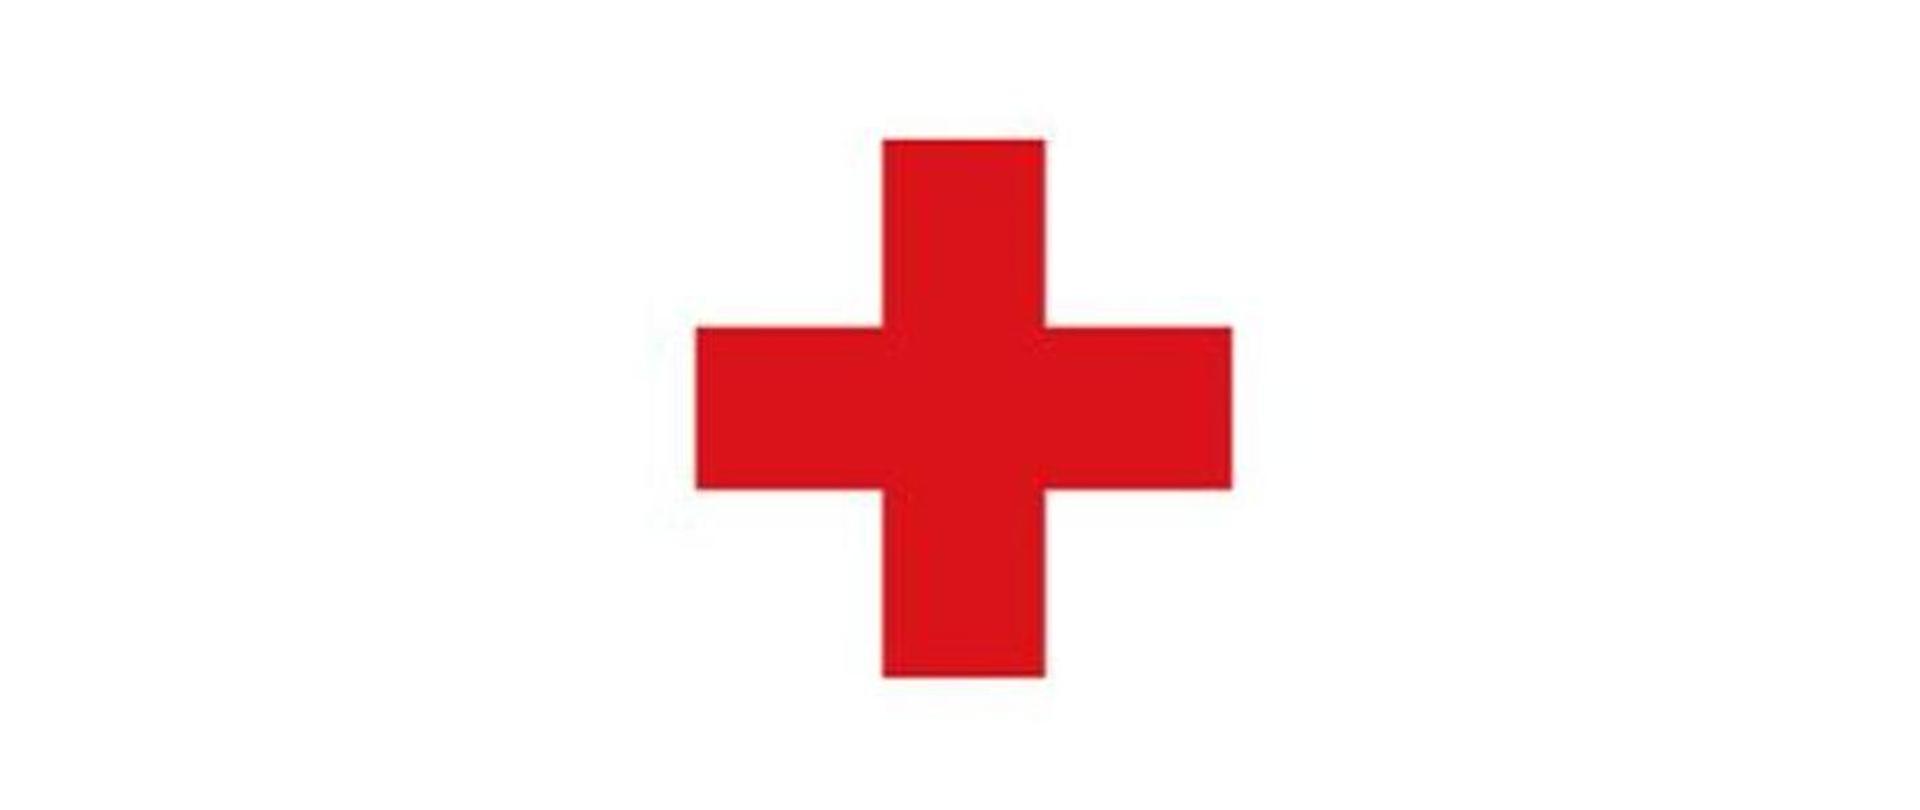 Zdjęcie przedstawia czerwony krzyż.